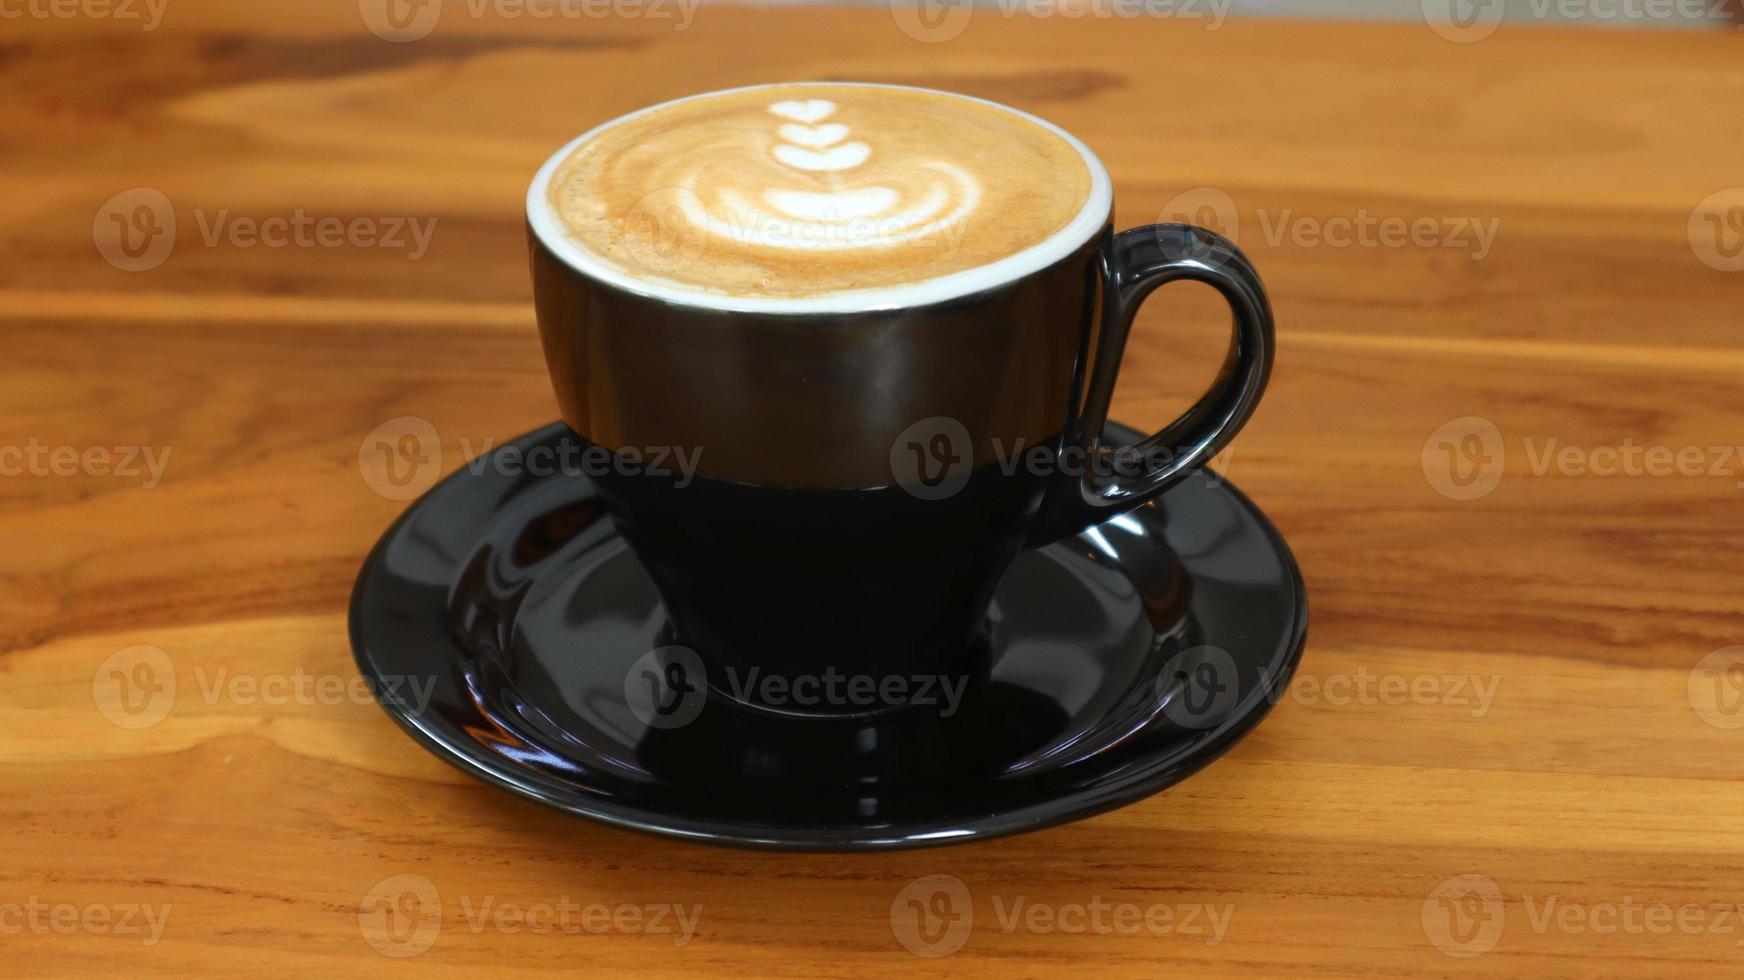 en glas av cappuccino kaffe med skum träsnideri på de tabell foto